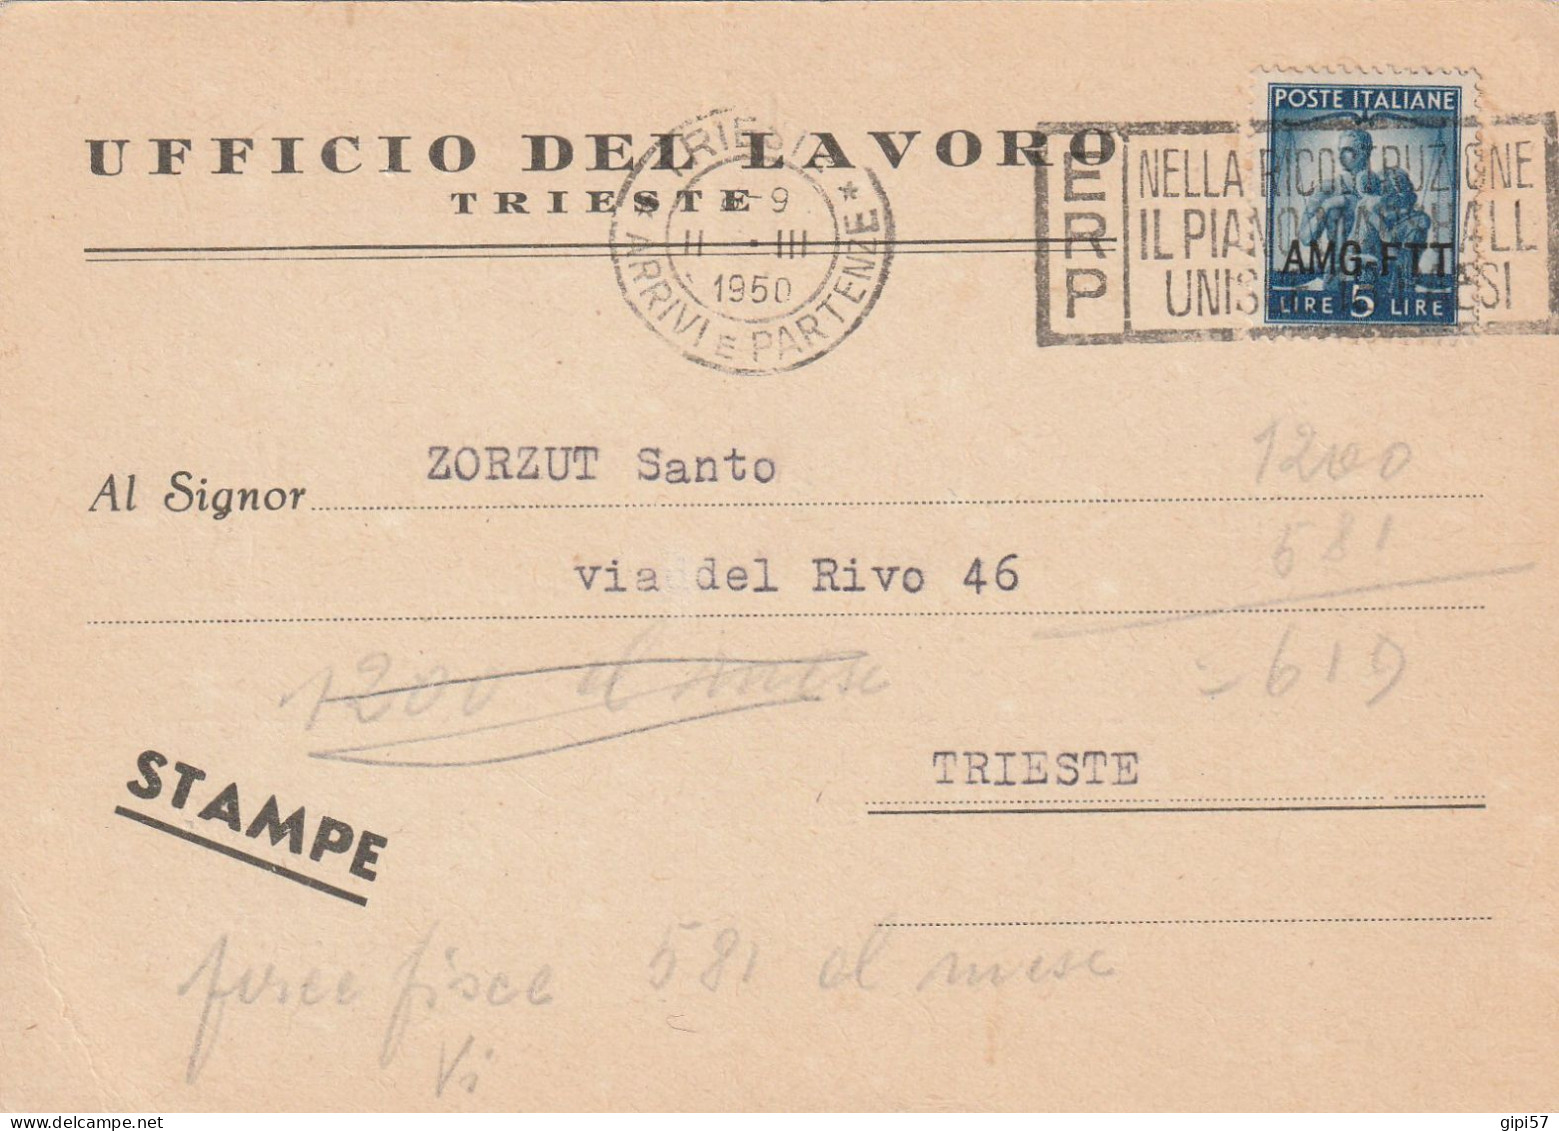 STAMPE UFFICIO LAVORO TRIESTE ANNULLO TARGHETTA ERP 1950 - Storia Postale